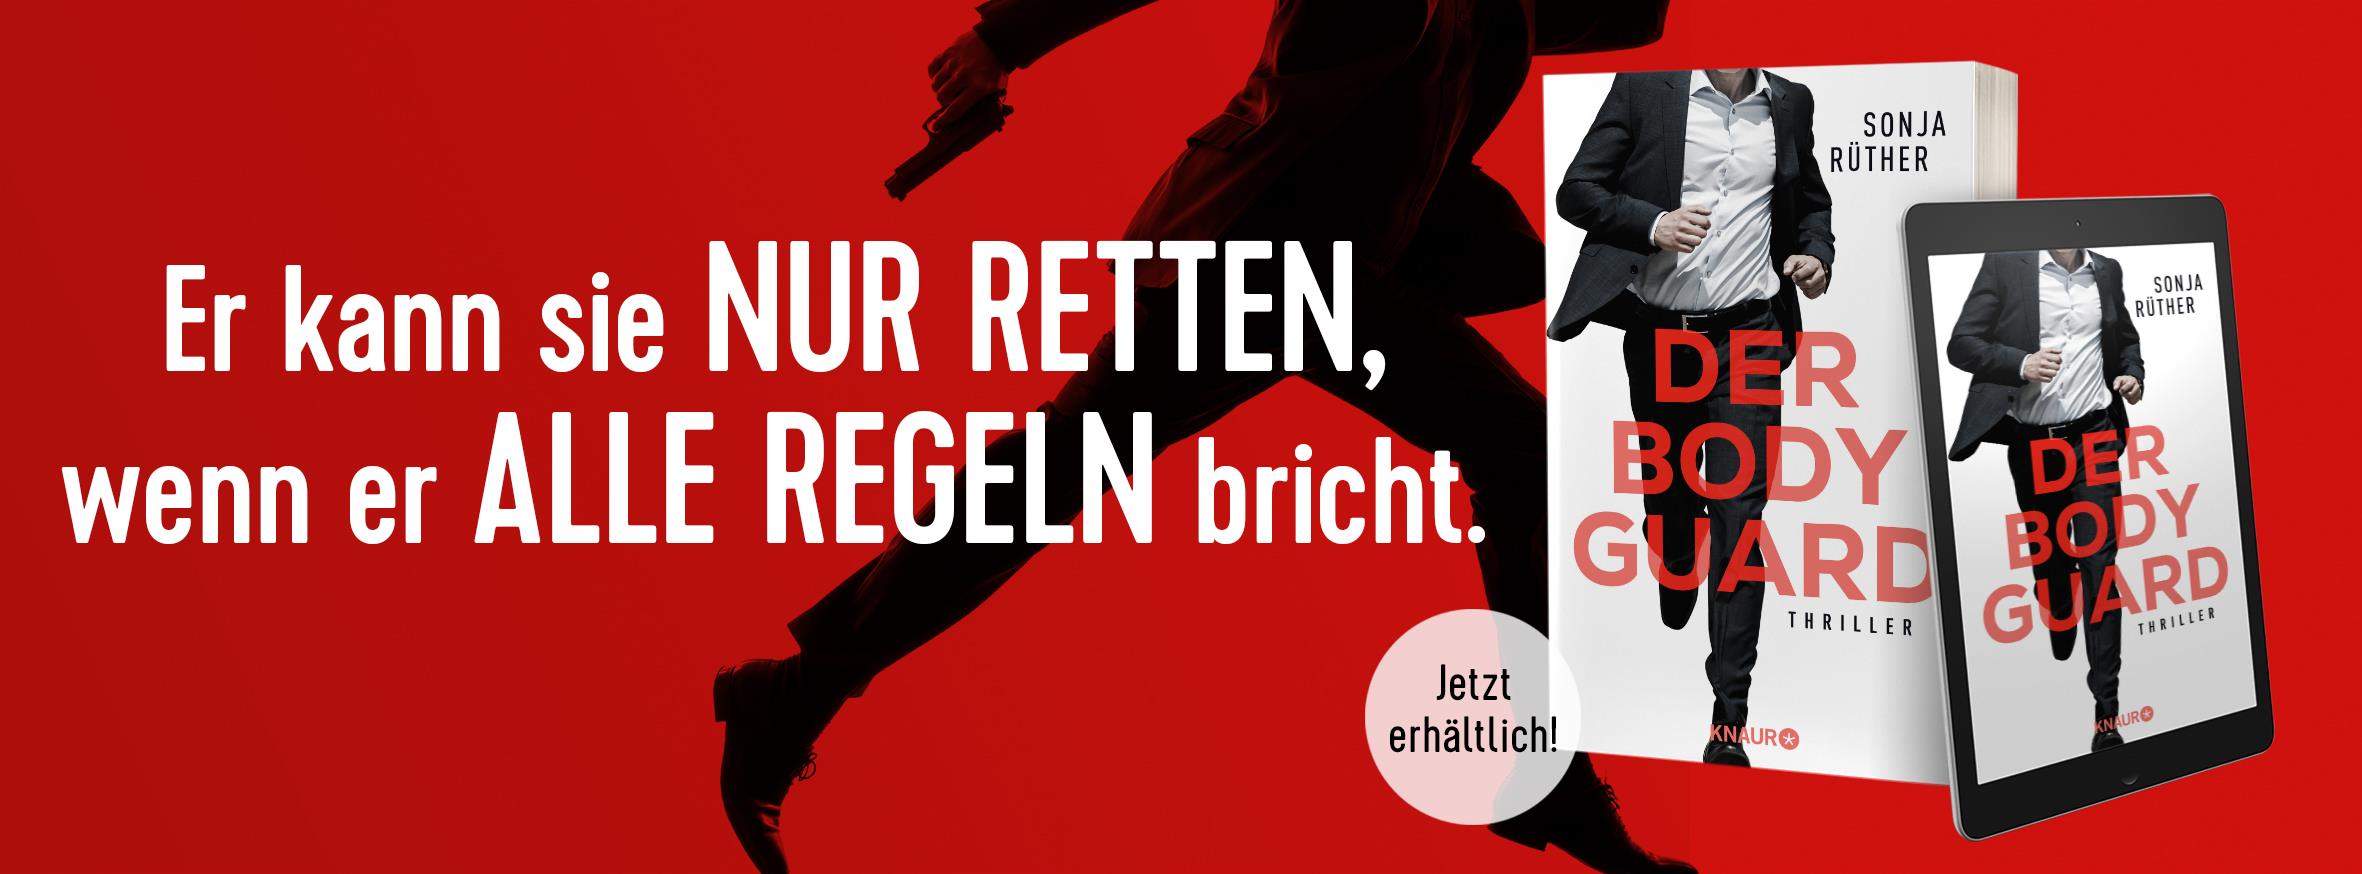 Banner zu #rettemich und dem Buch: Der Bodyguard von Sonja Rüther